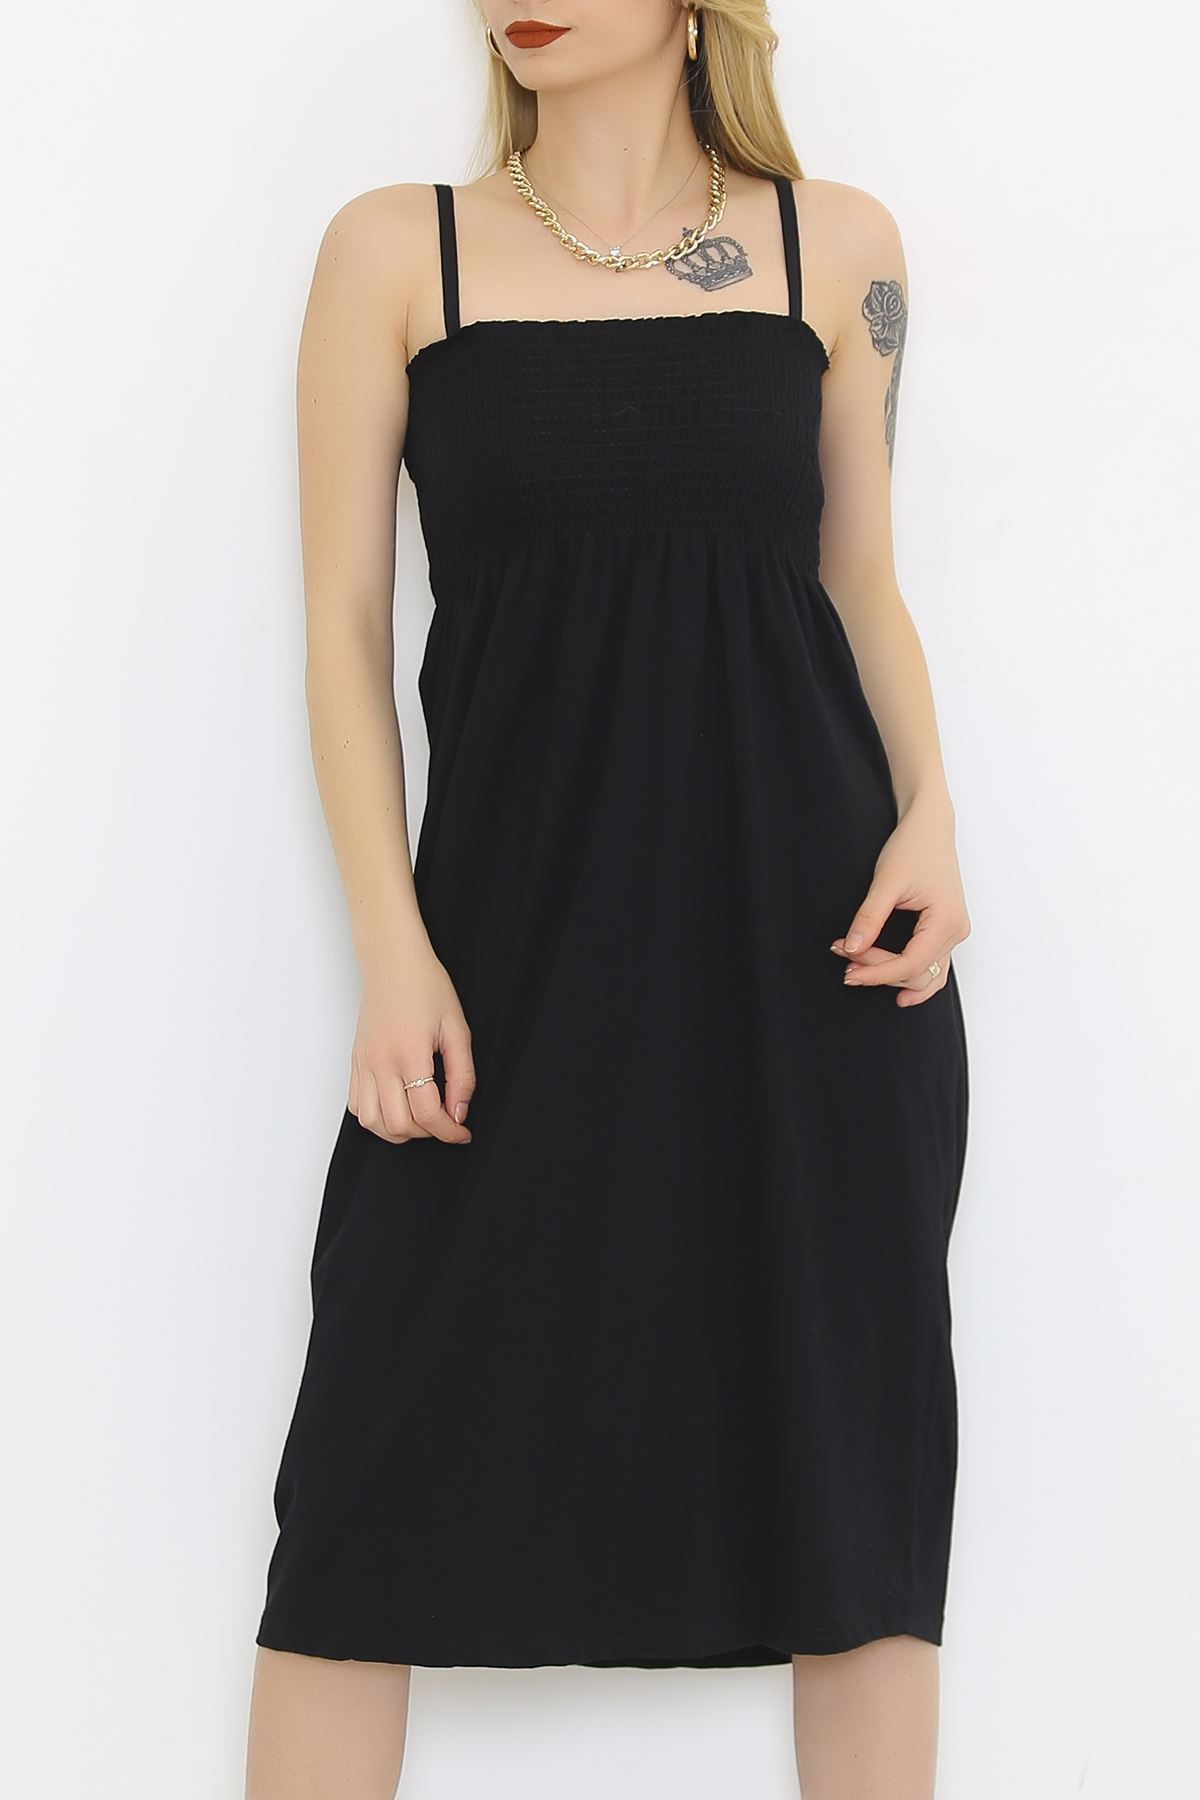 İp Askılı Elbise Siyah - 9267.1062.